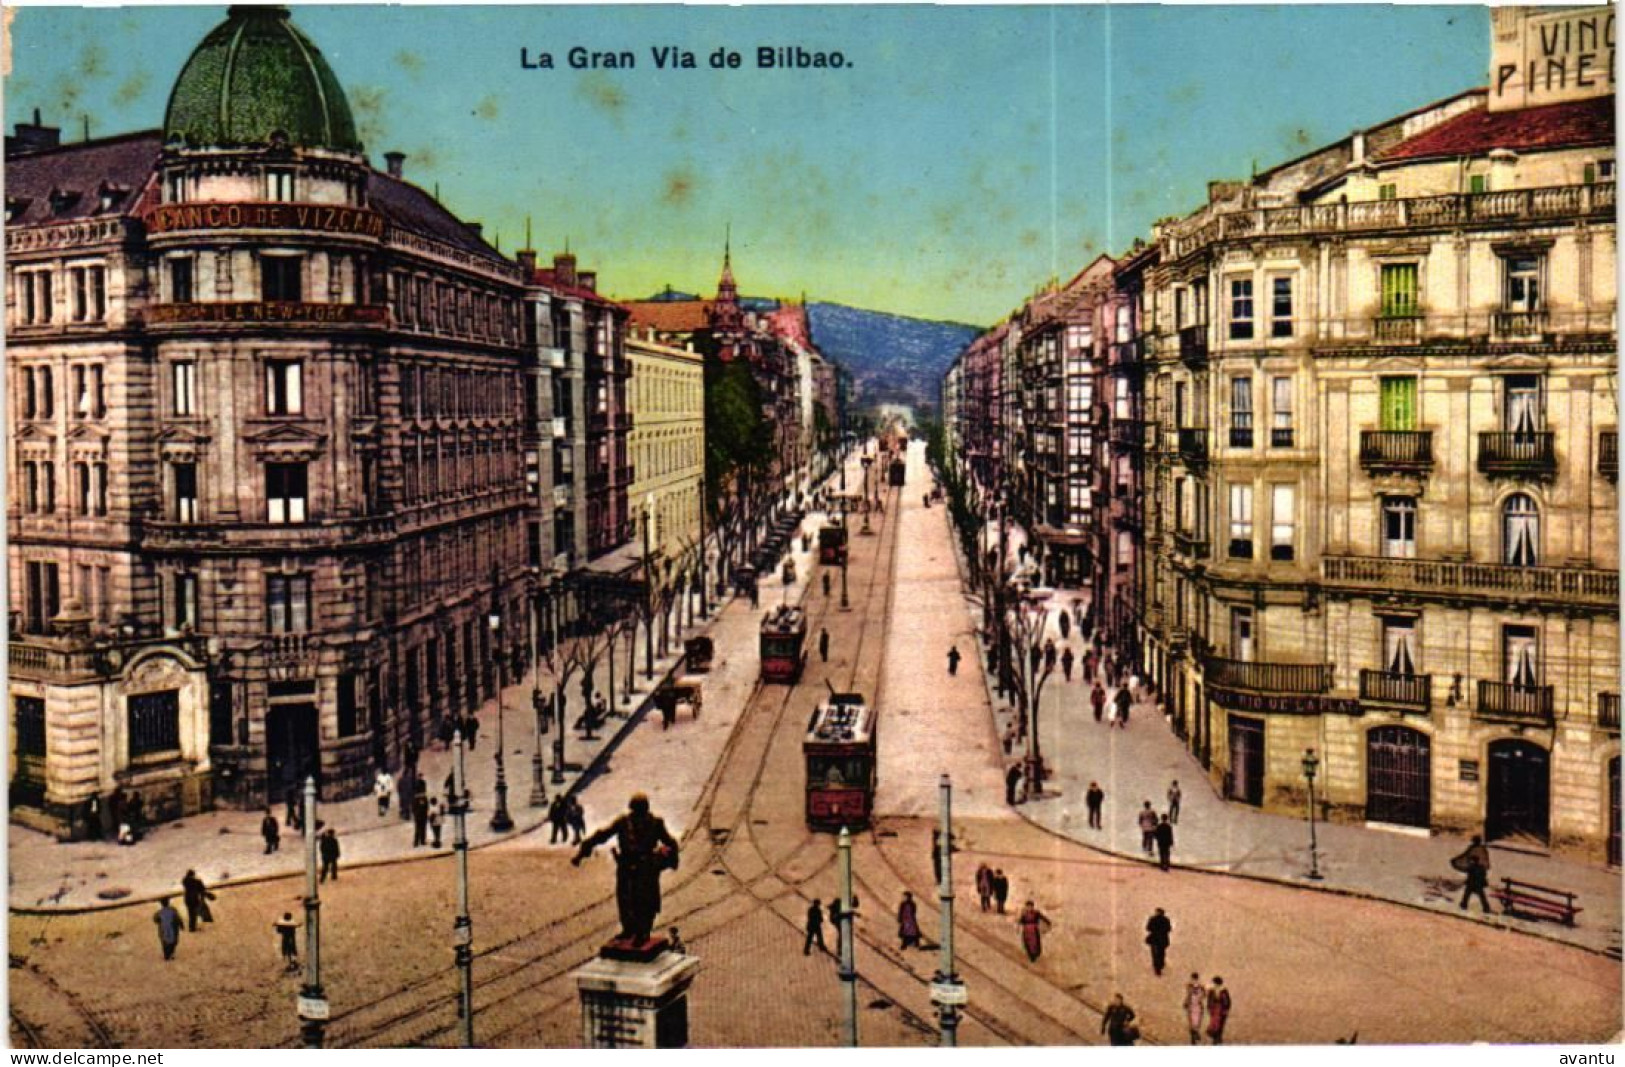 BILBAO / LA GRAN VIA DE BILBAO - Vizcaya (Bilbao)